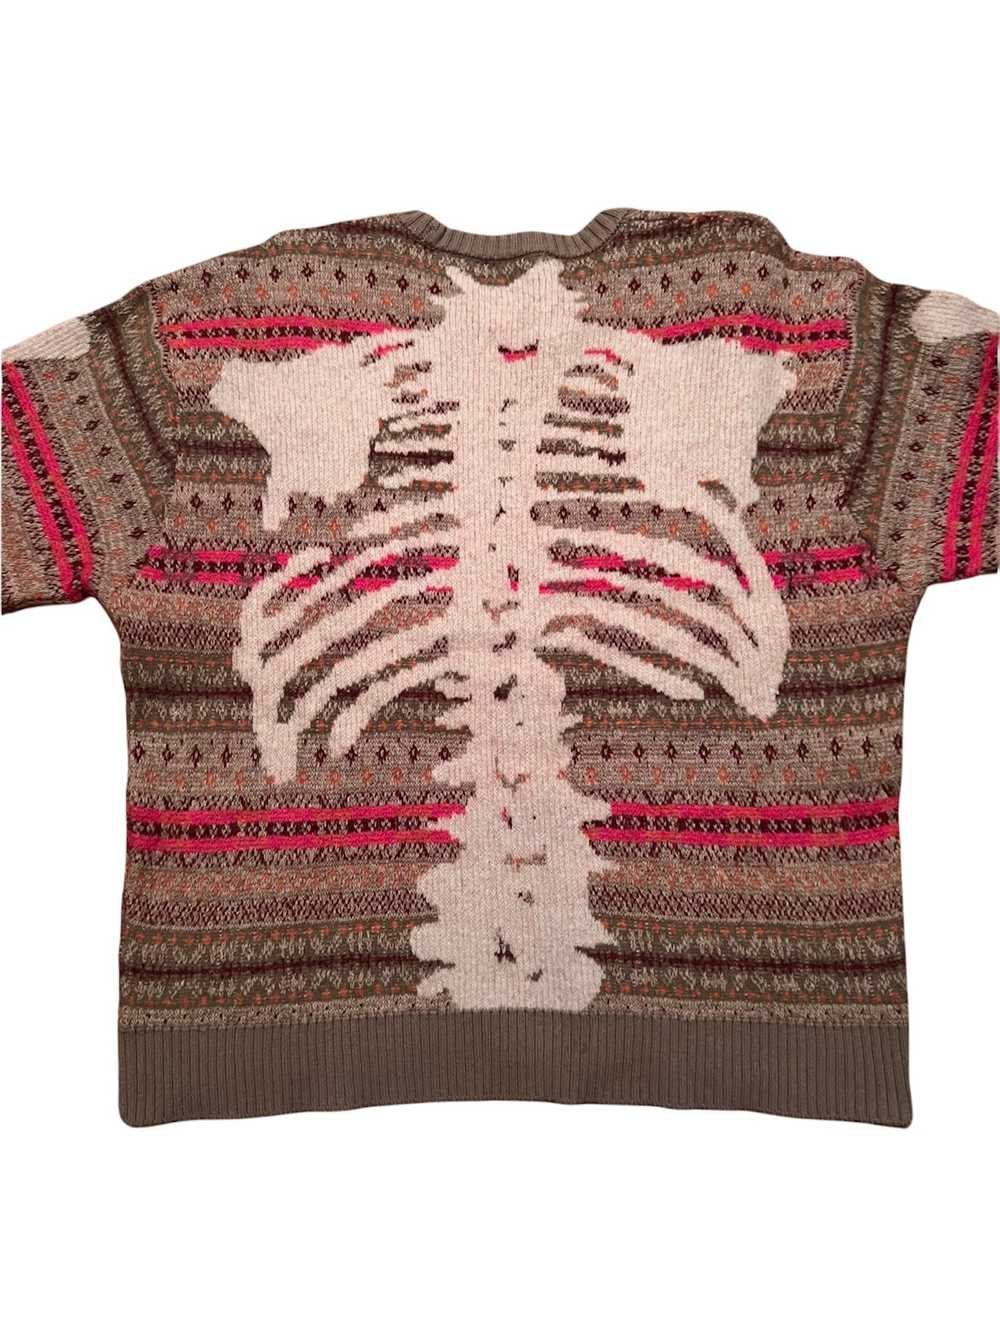 Kapital Kapital Skeleton Knit Sweater - image 2